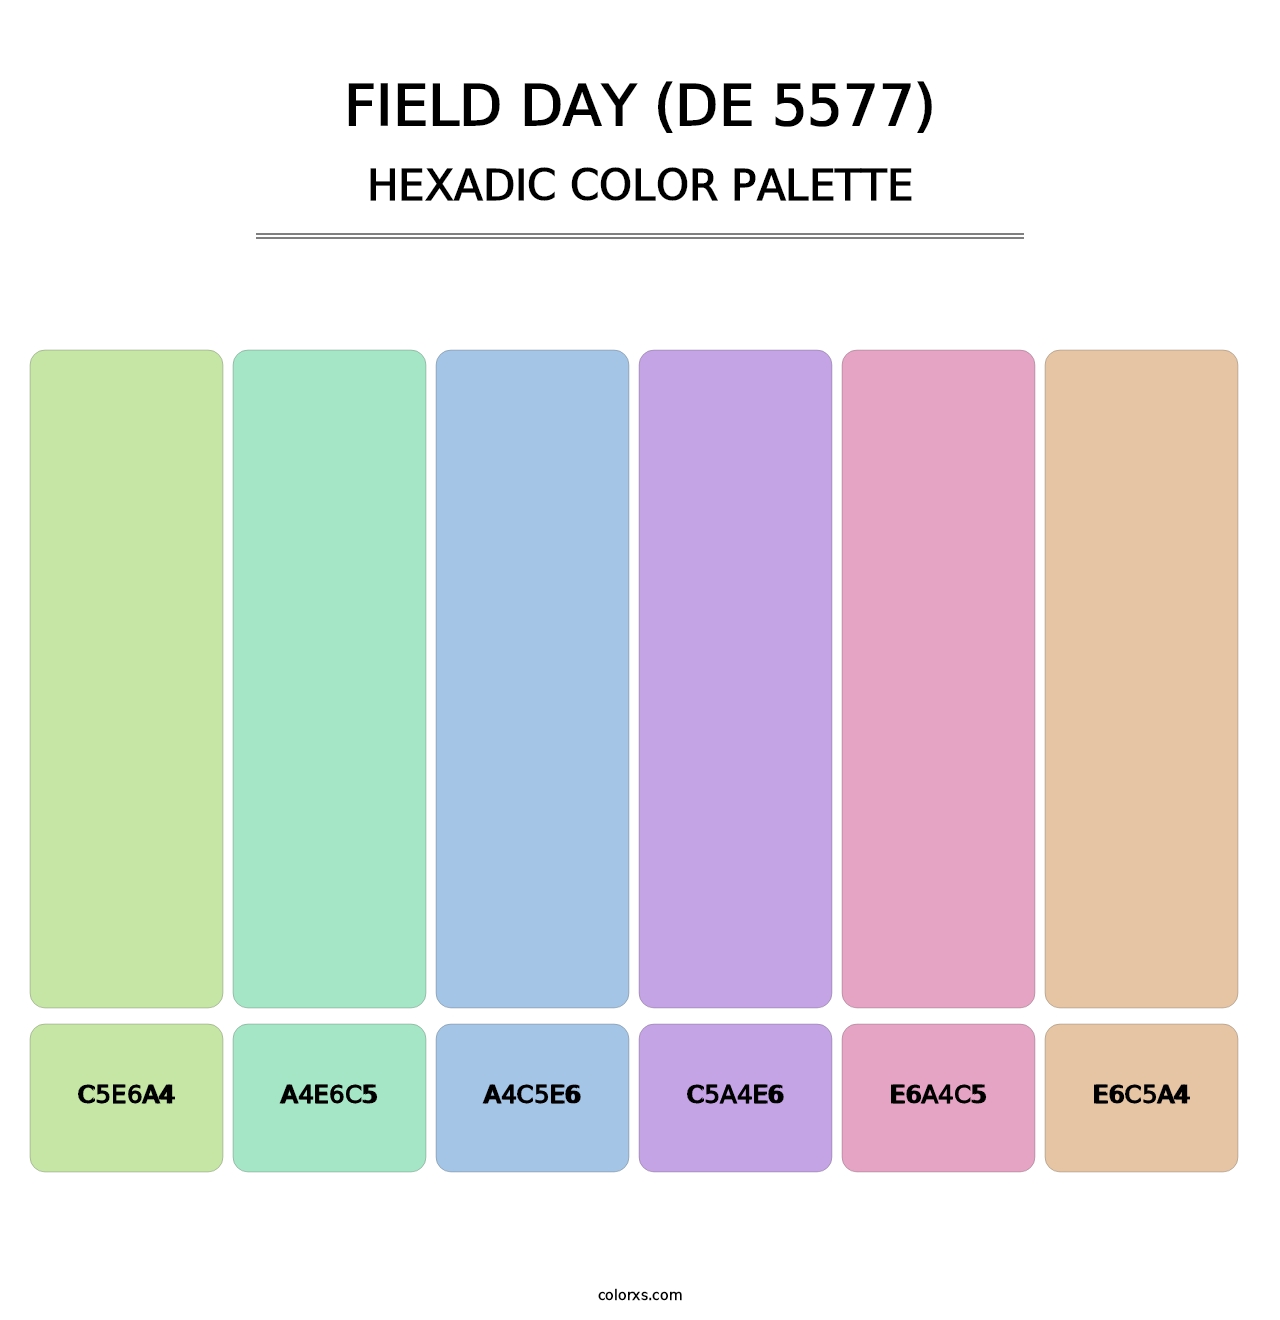 Field Day (DE 5577) - Hexadic Color Palette